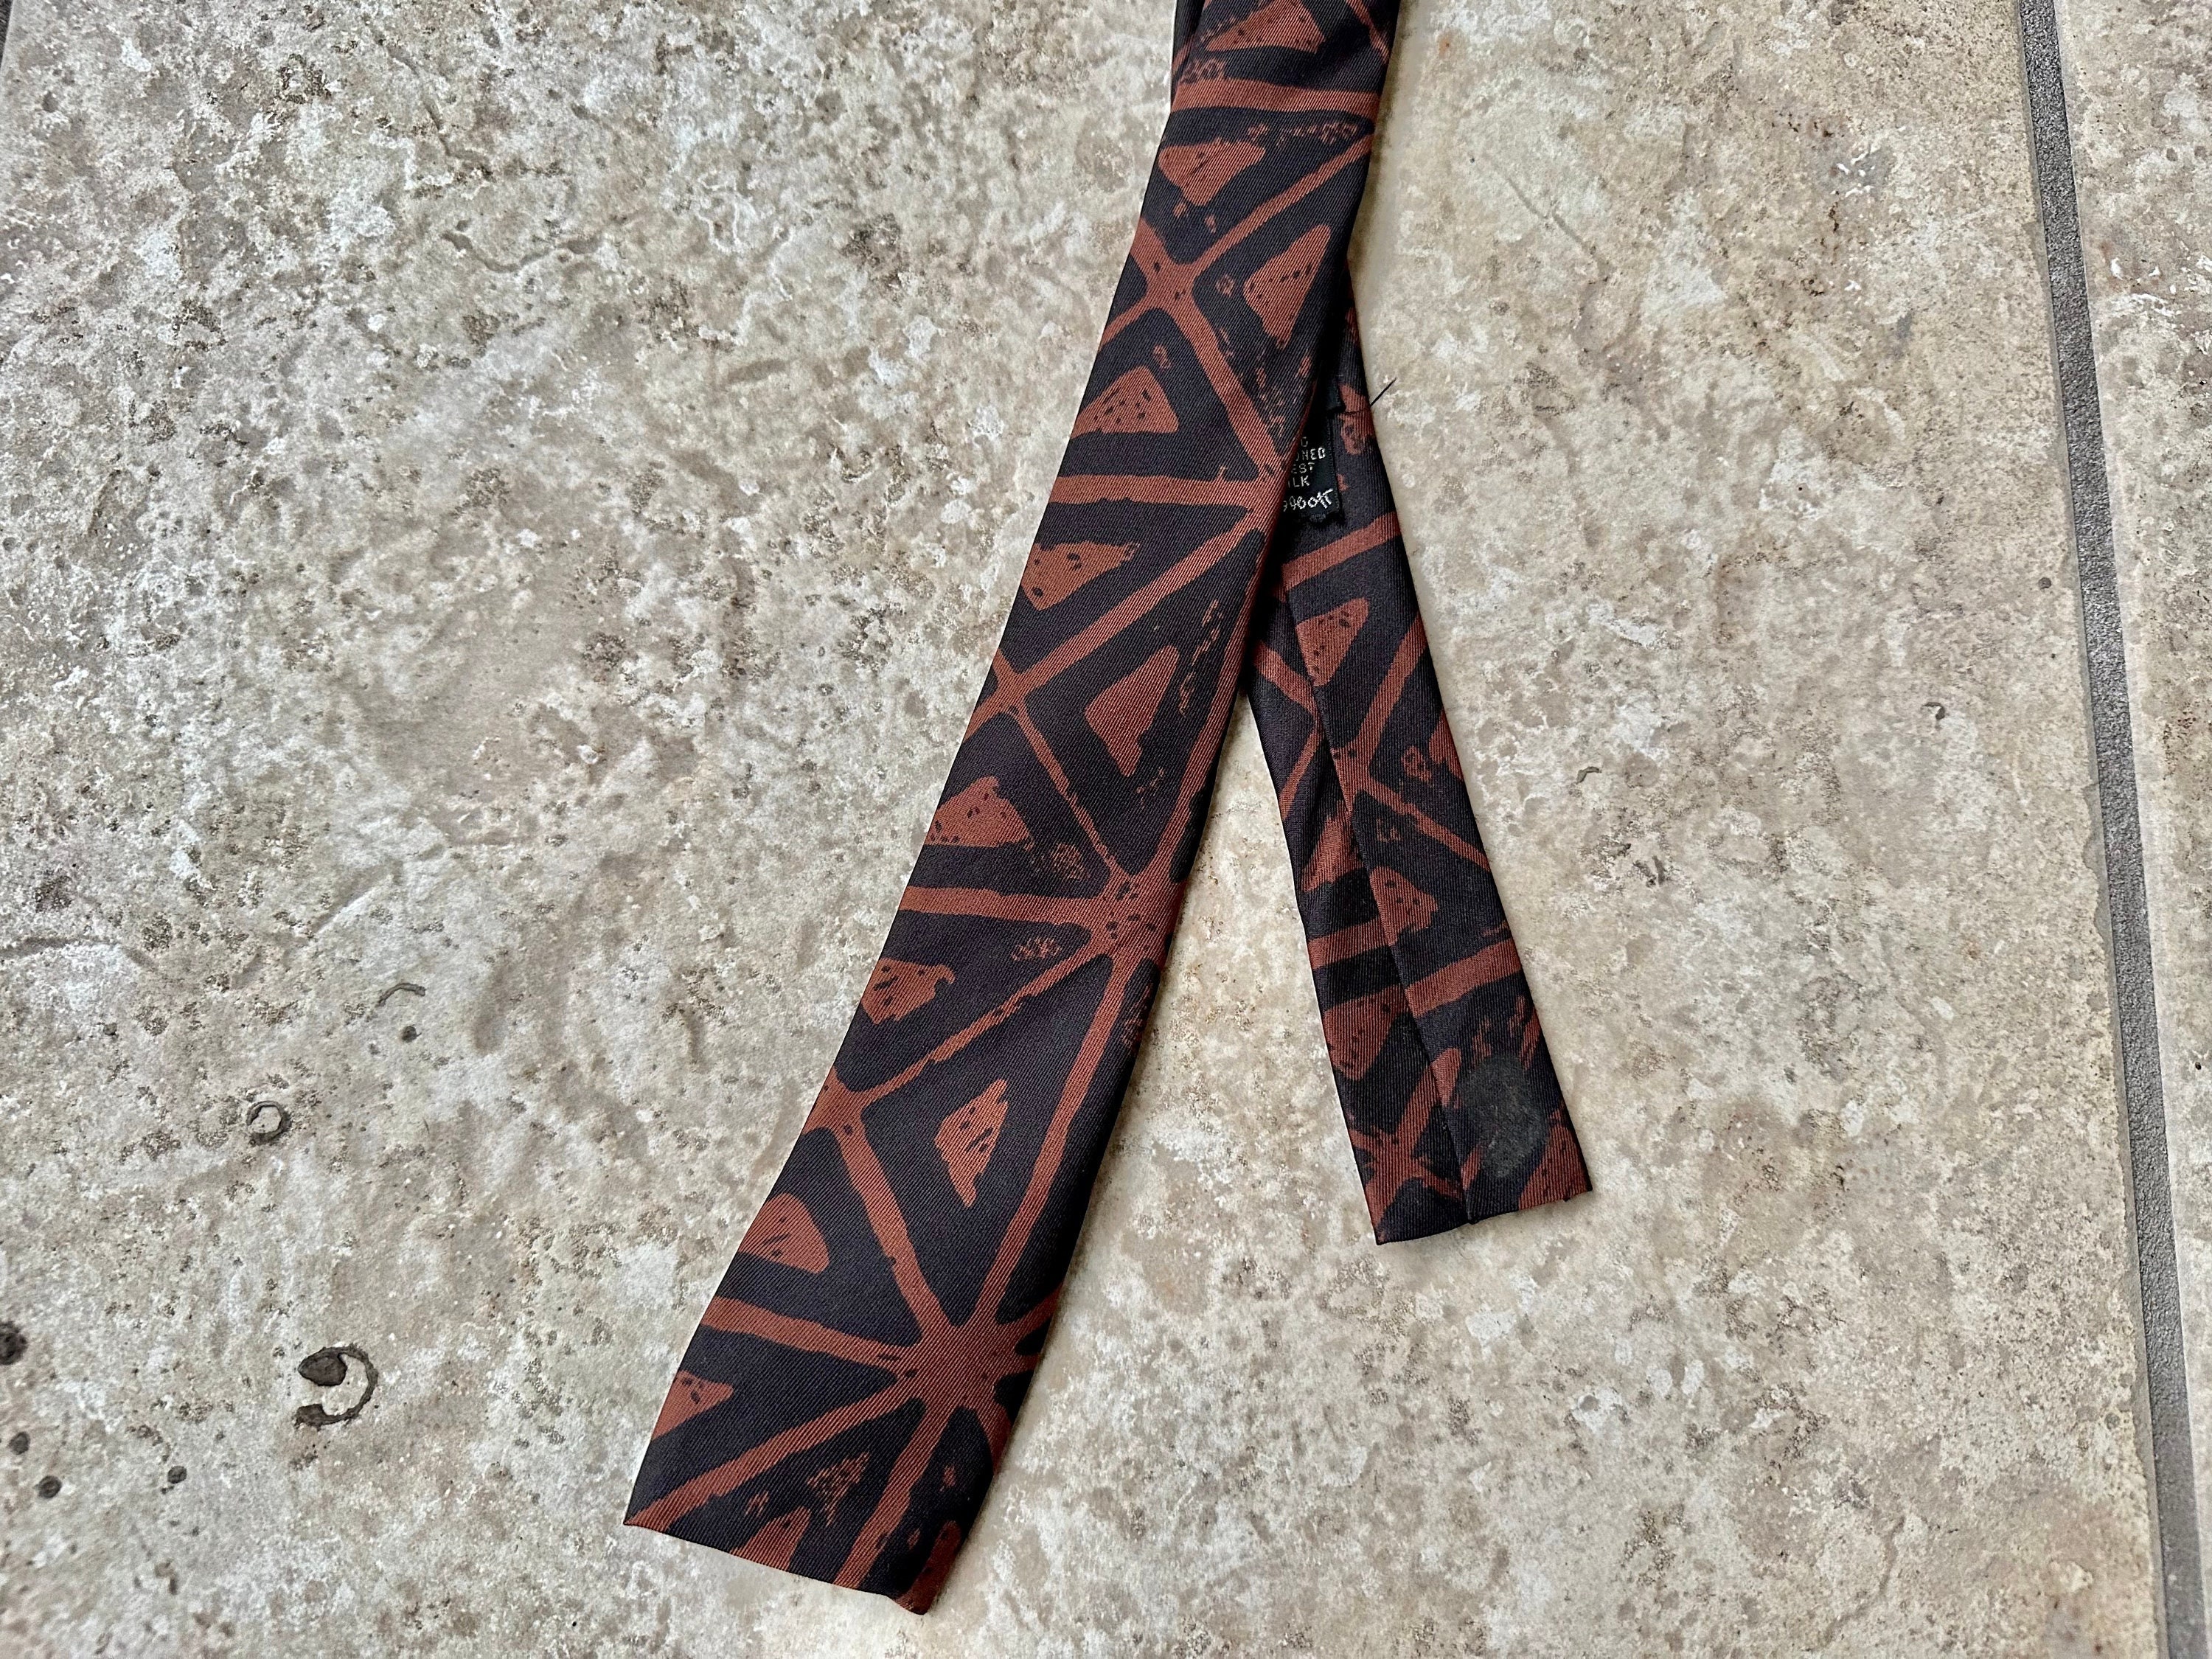 Louis Vuitton Monogram 100% Silk Tie Necktie Dark Green Brown